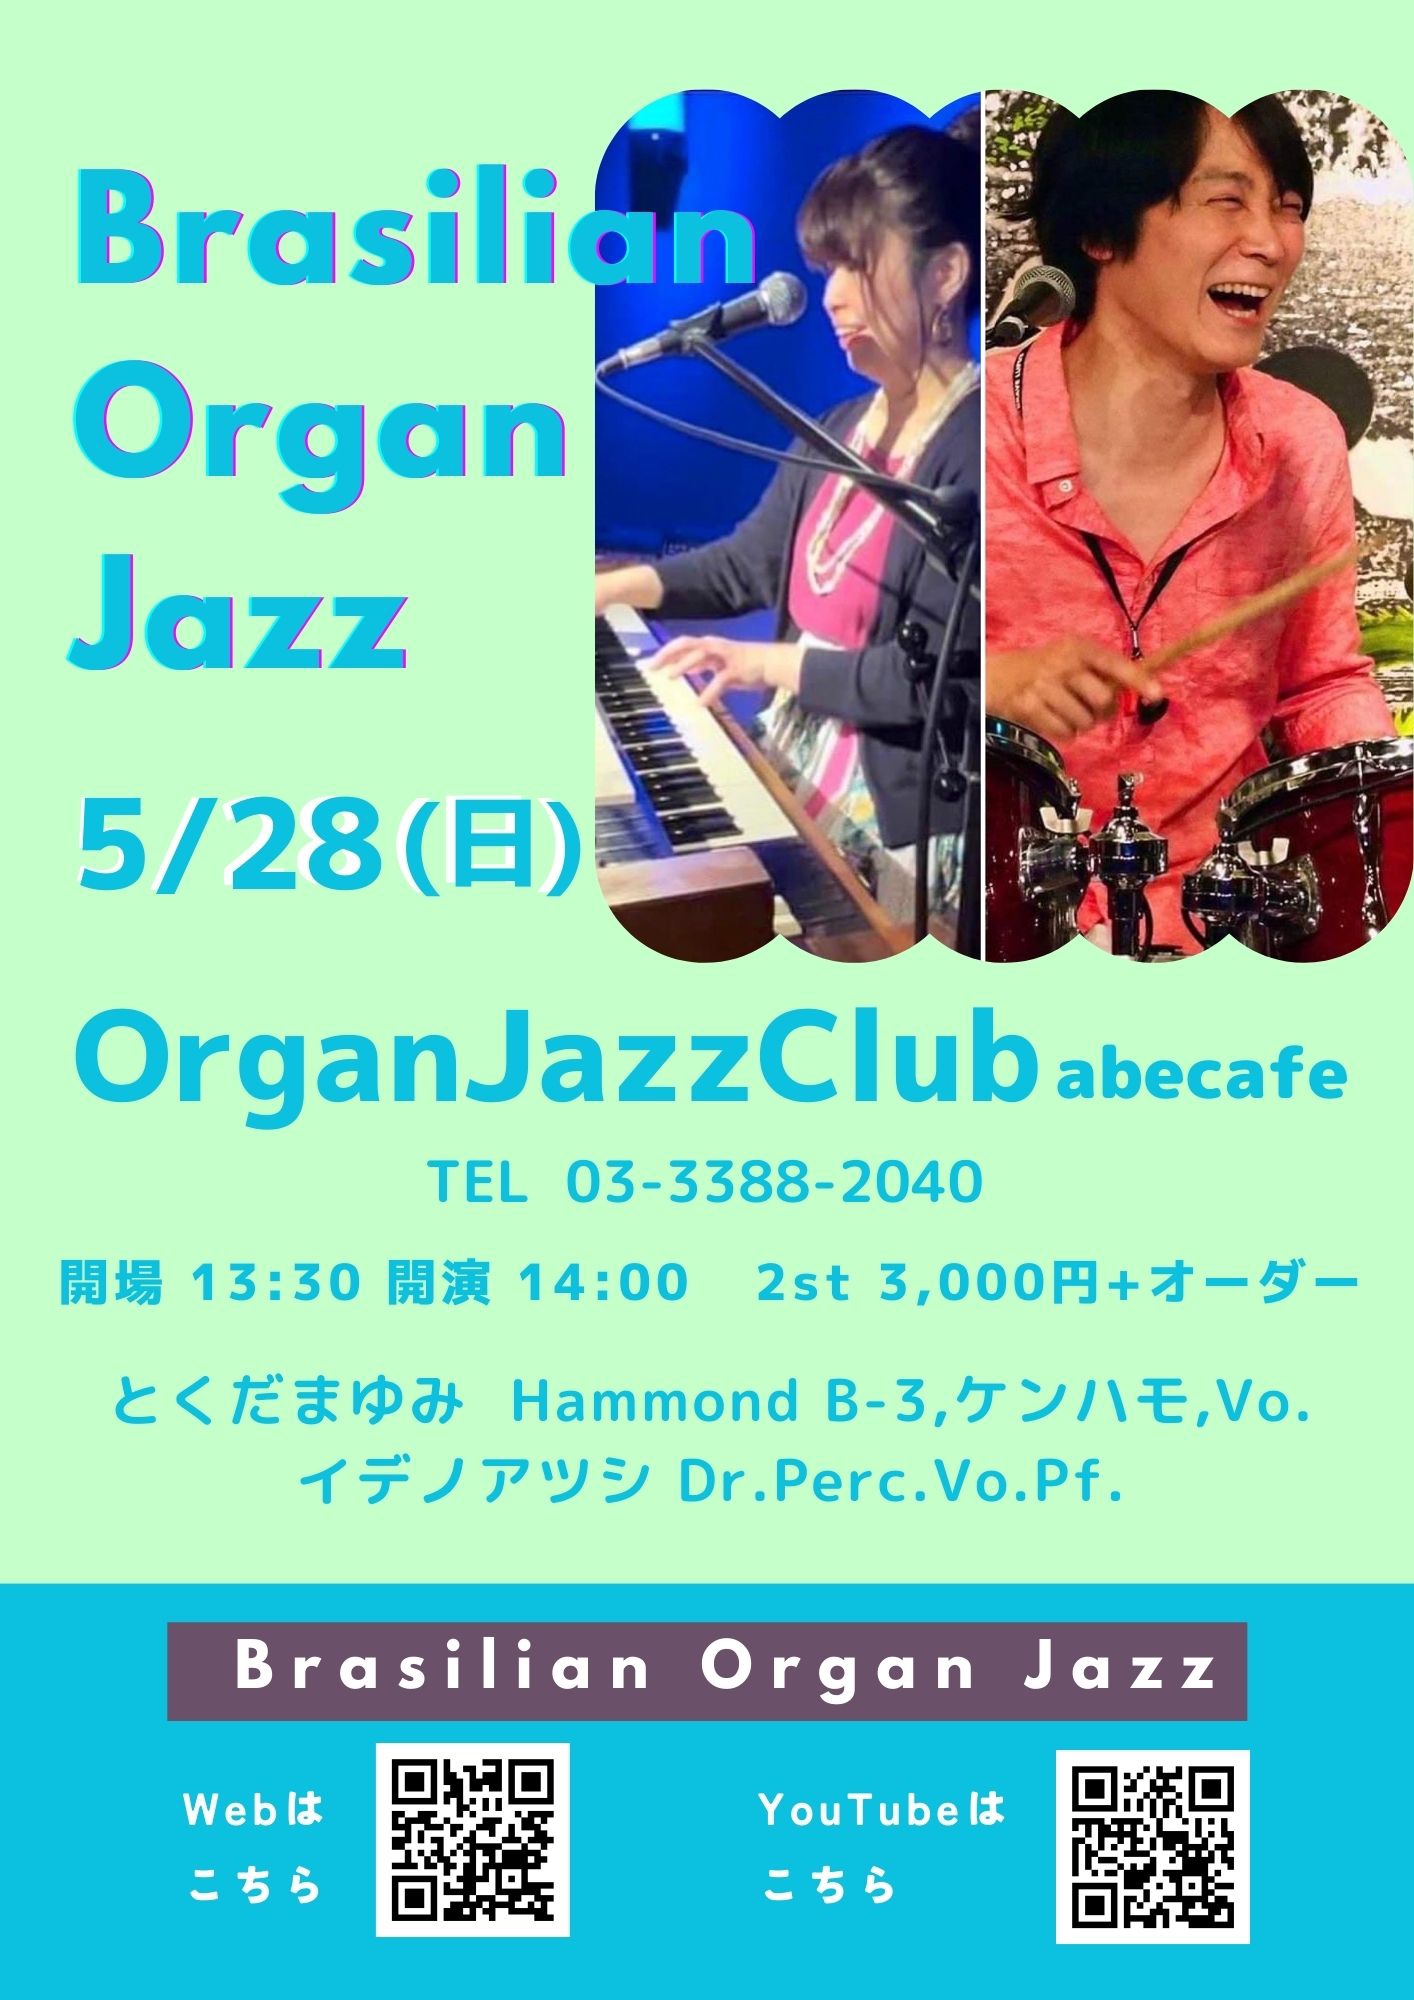 BOJ】Brasilian Organ Jazz | ブラジル音楽オルガニスト🇧🇷とくだまゆみ